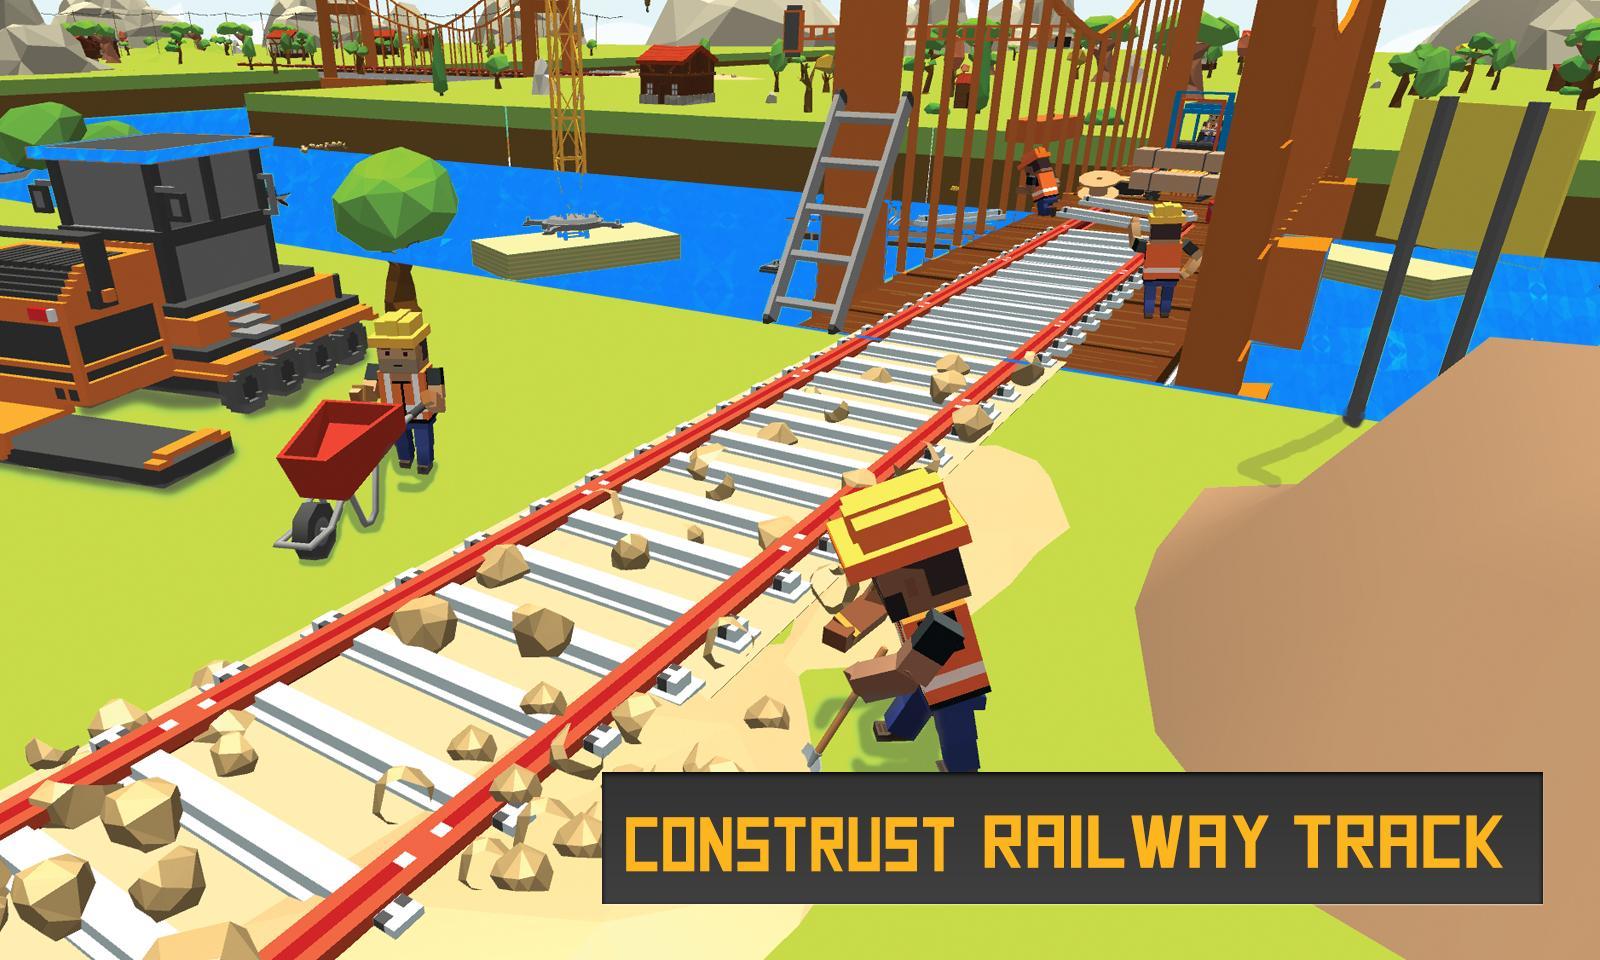 Screenshot 1 of เกมส์สร้างสะพานรถไฟข้ามแม่น้ำ 2017 1.1